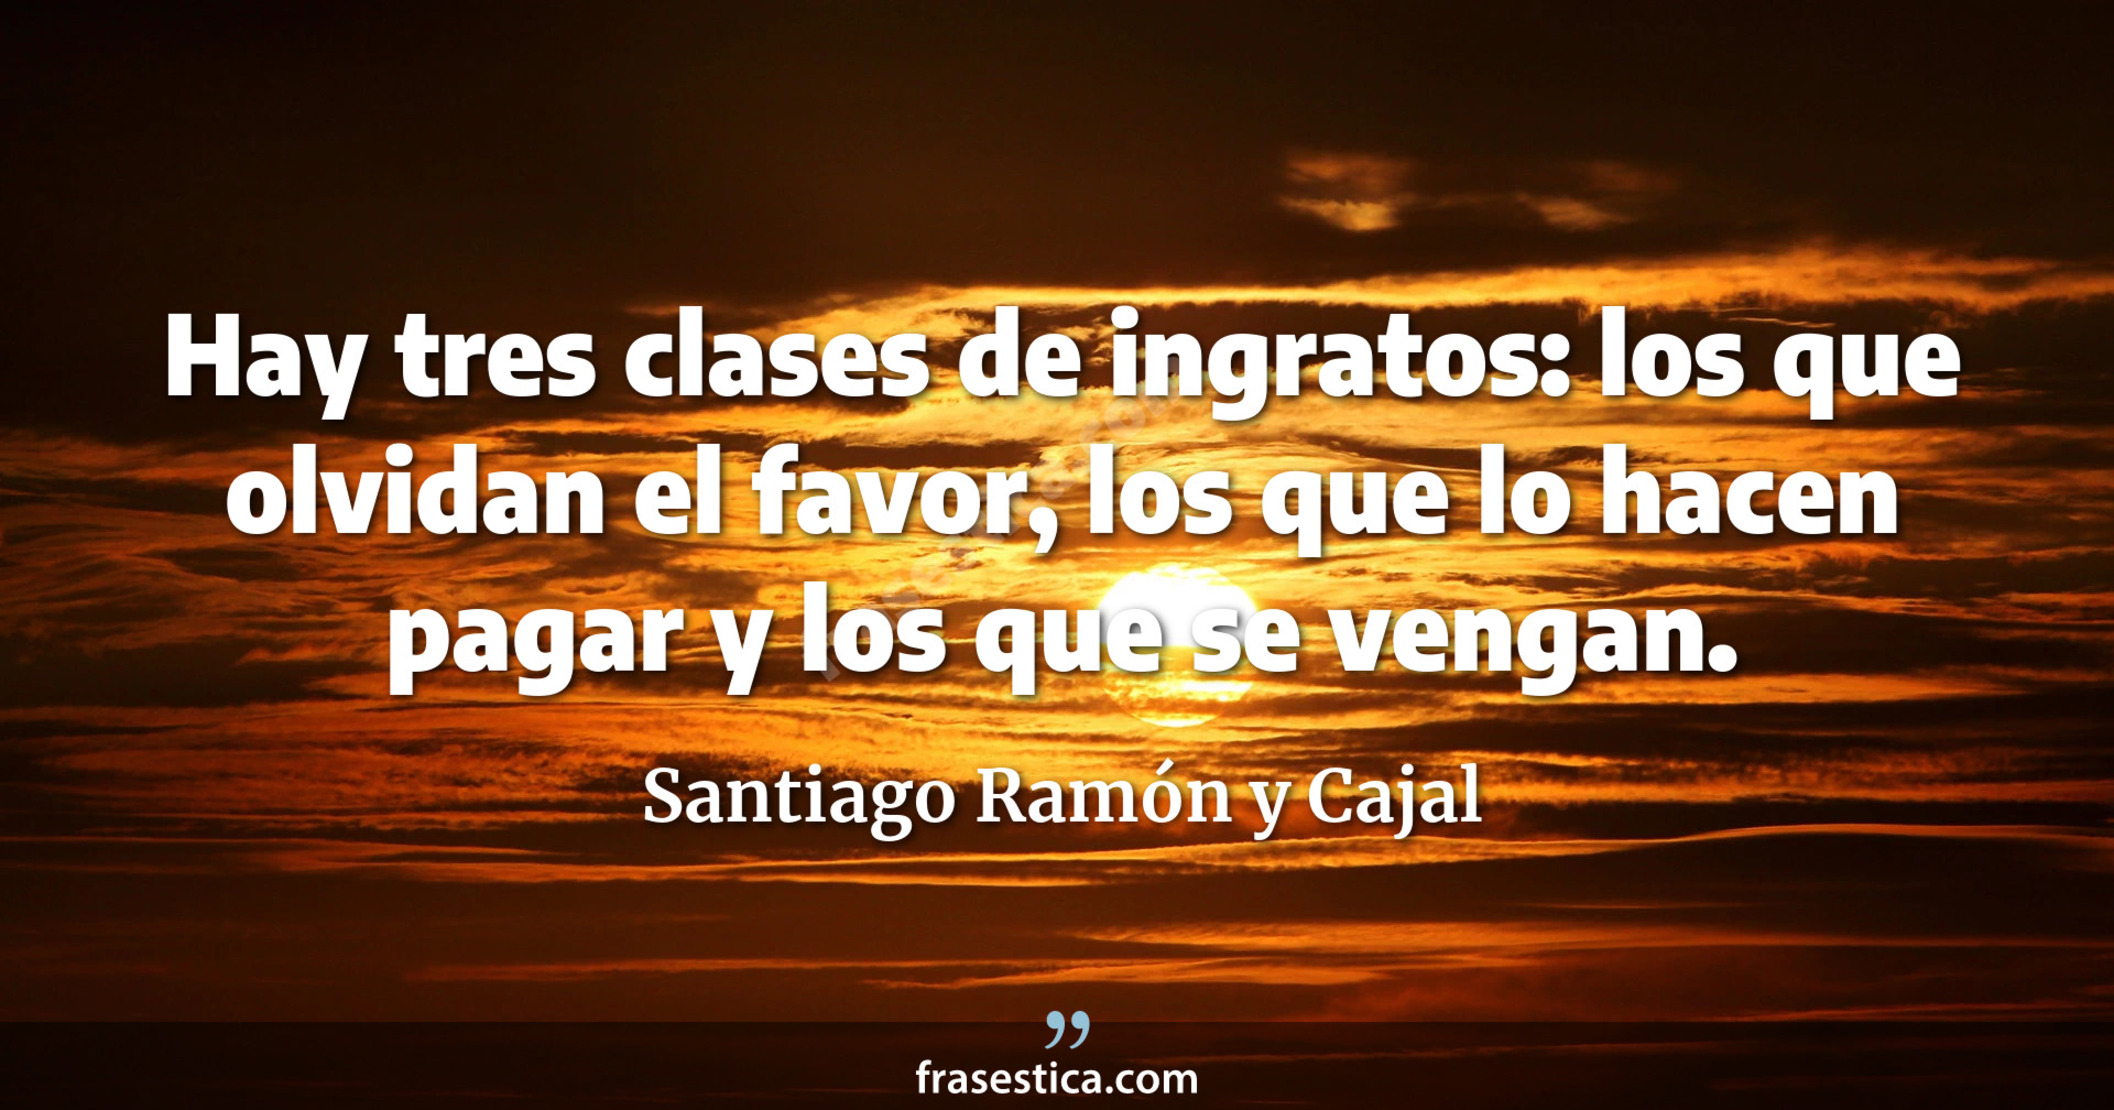 Hay tres clases de ingratos: los que olvidan el favor, los que lo hacen pagar y los que se vengan. - Santiago Ramón y Cajal